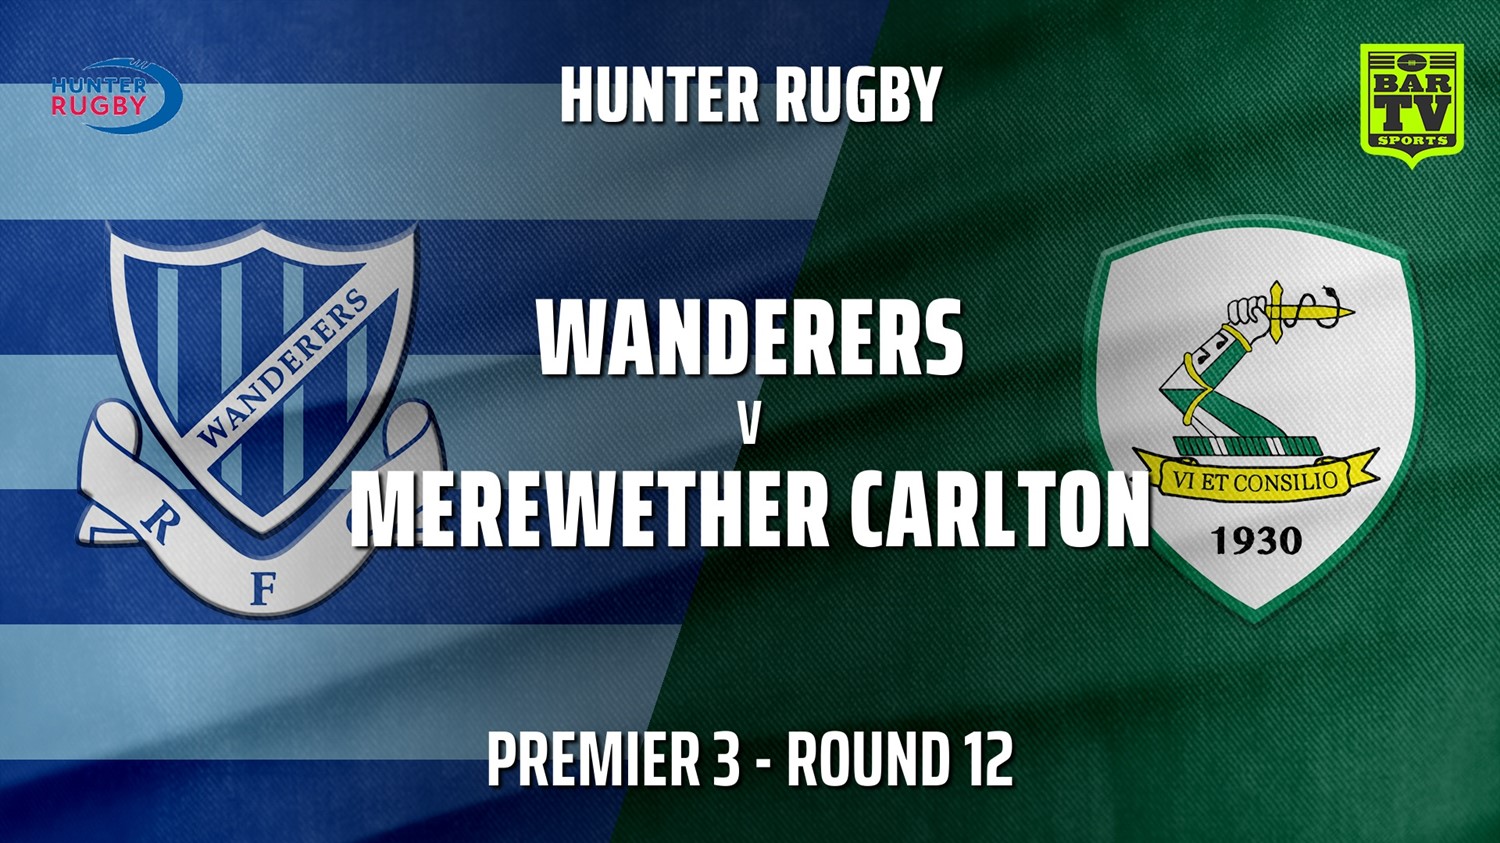 210721-Hunter Rugby Round 12 - Premier 3 - Wanderers v Merewether Carlton Slate Image